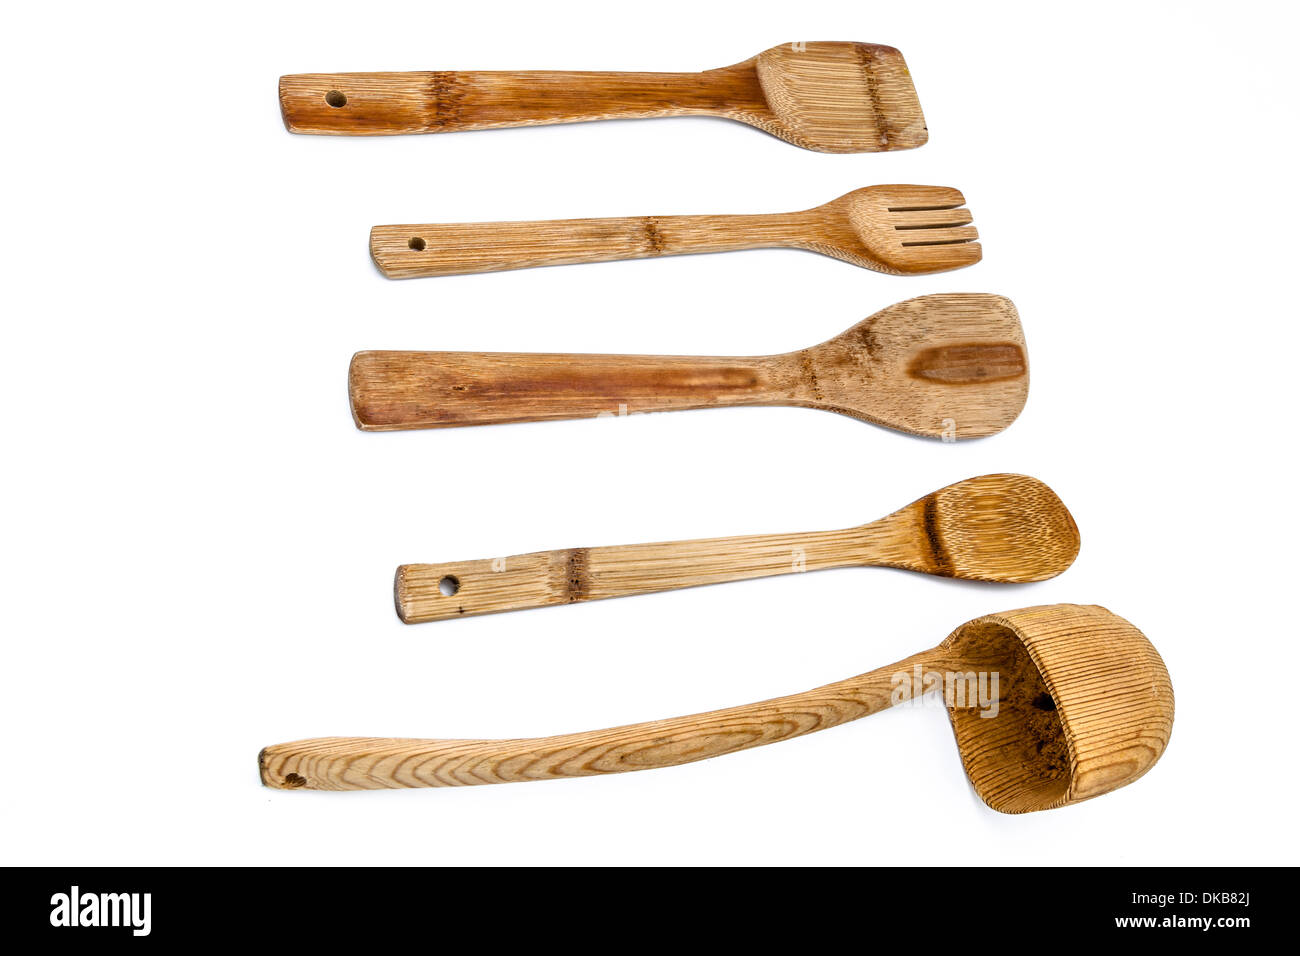 Una composición de cocina de madera utensilson un fondo blanco. Foto de stock